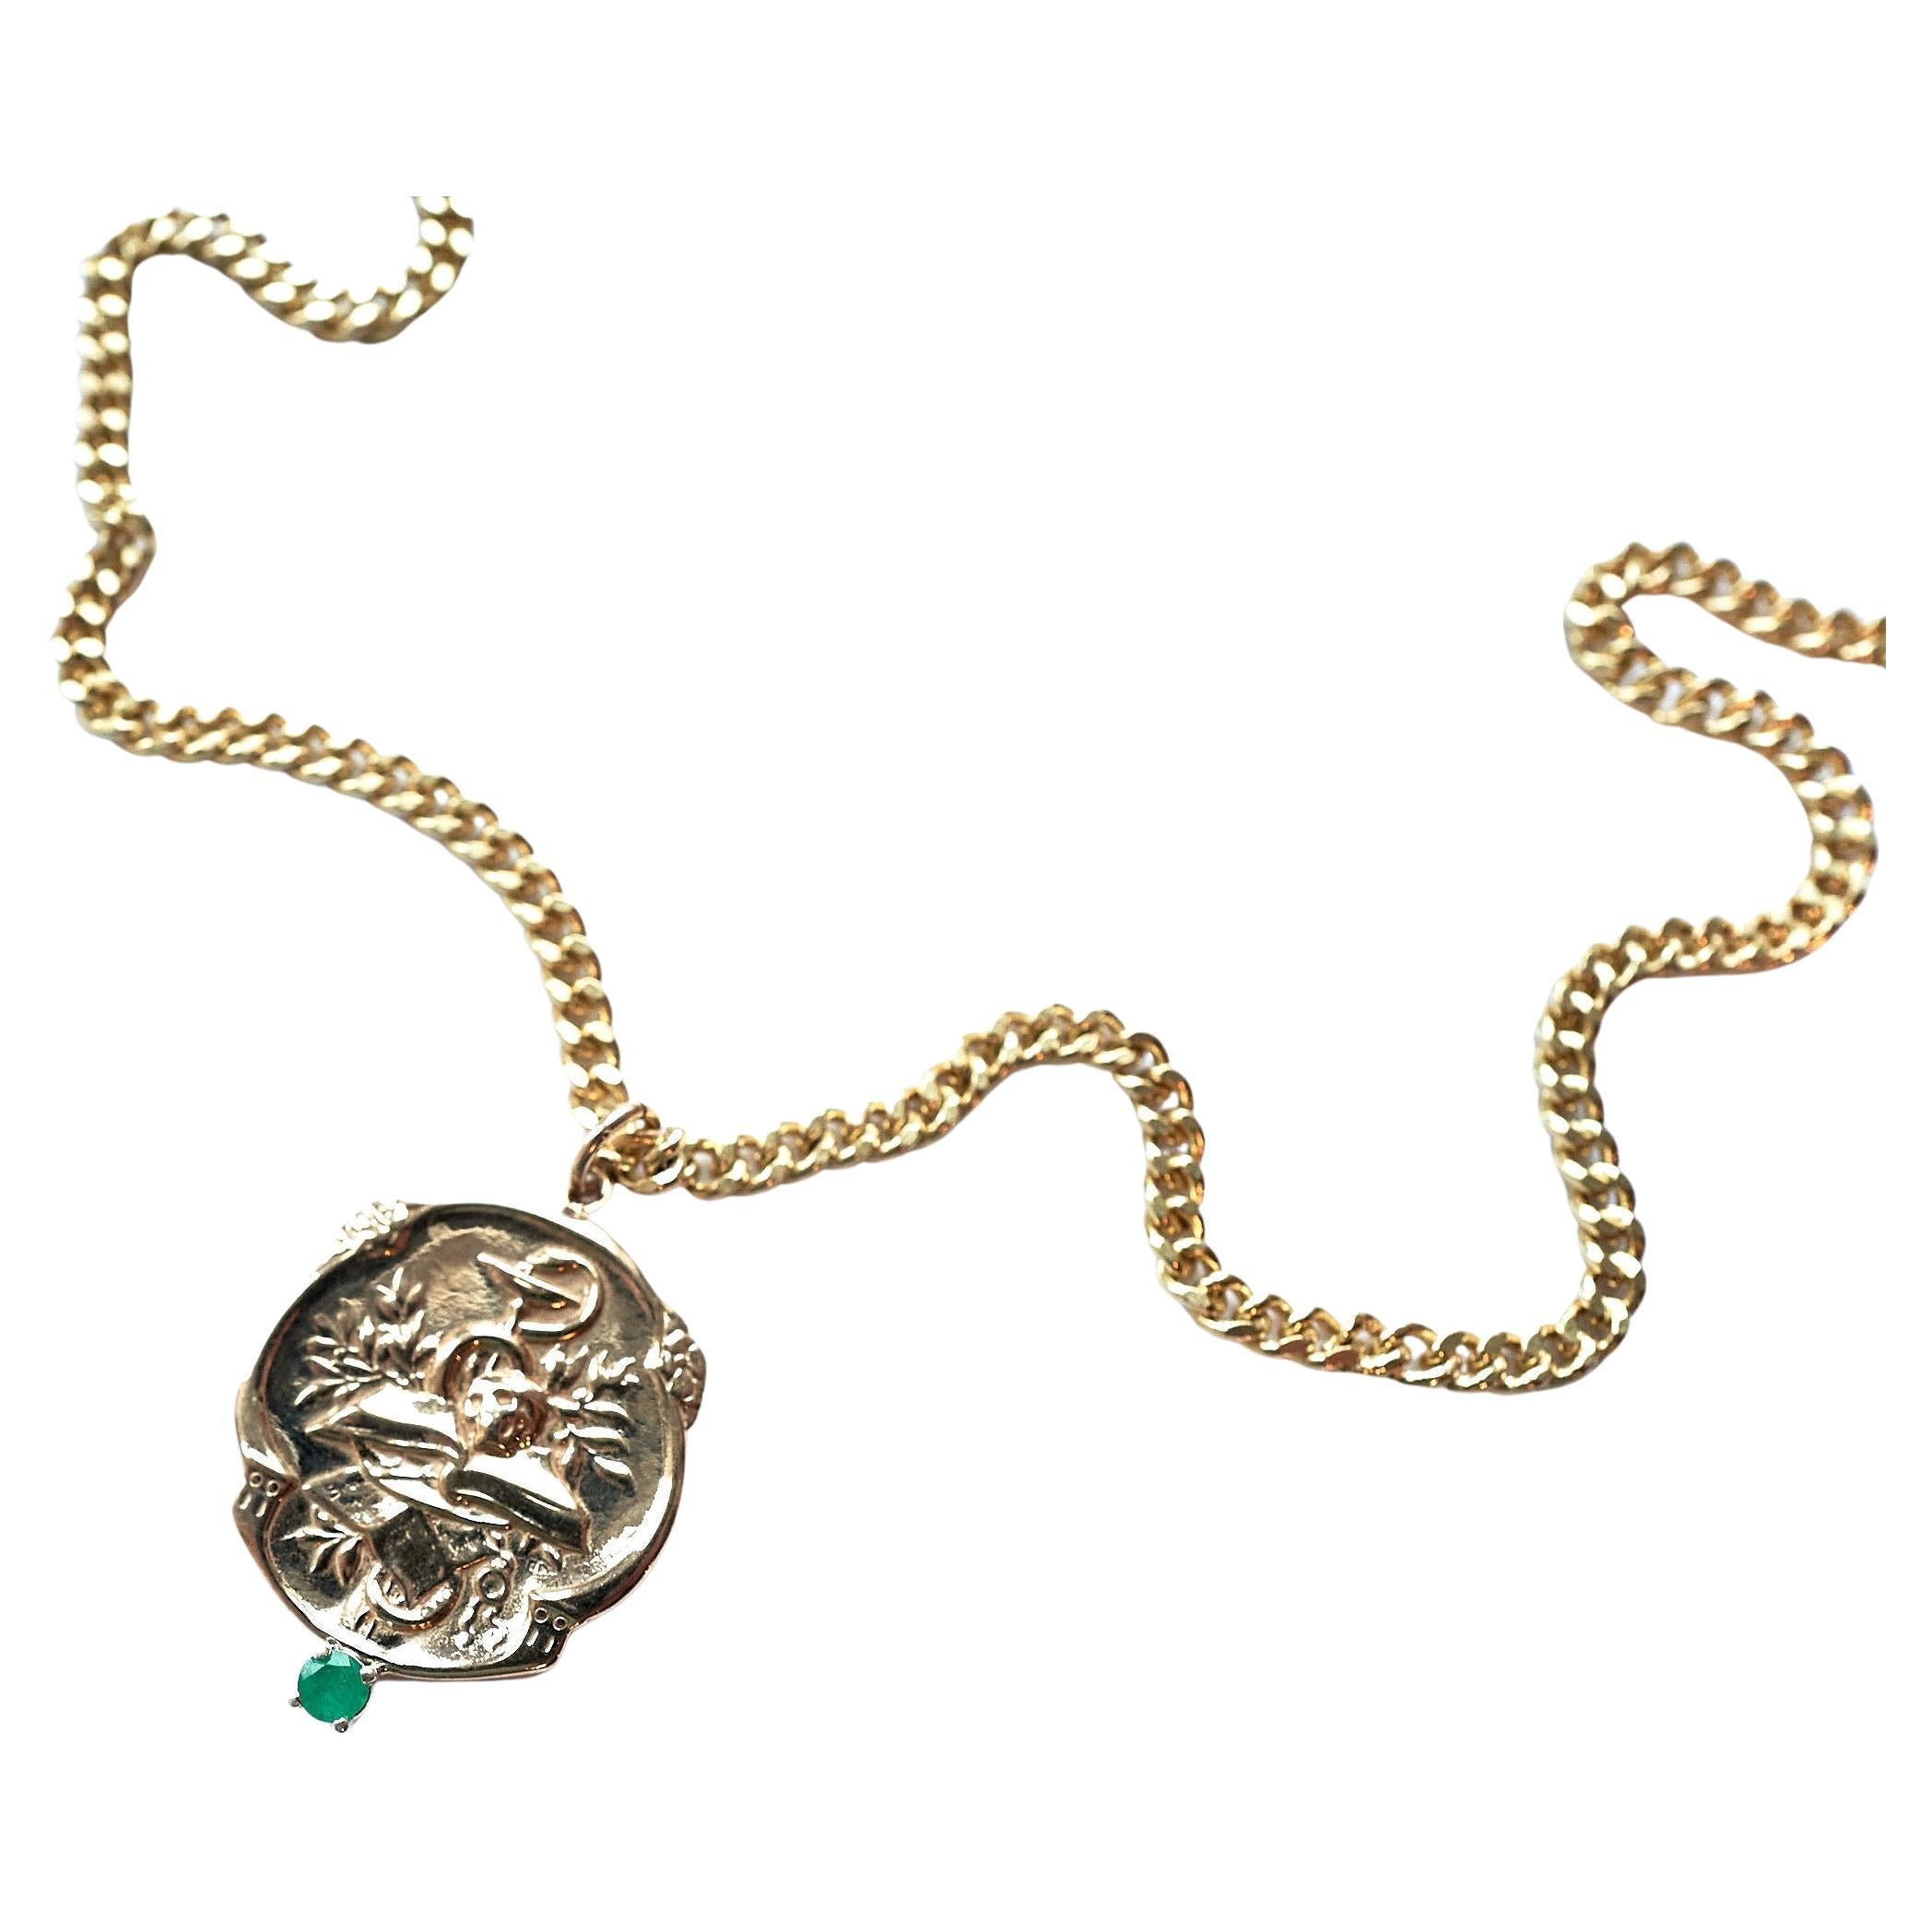 Smaragd-Halskette im viktorianischen Stil Memento Mori-Medaille mit Totenkopfkette J Dauphin
Vergoldete Messingkette und Bronzemedaille

Symbole oder Medaillen können zu einem mächtigen Werkzeug in unserem Arsenal für das Spirituelle werden. 
Seit